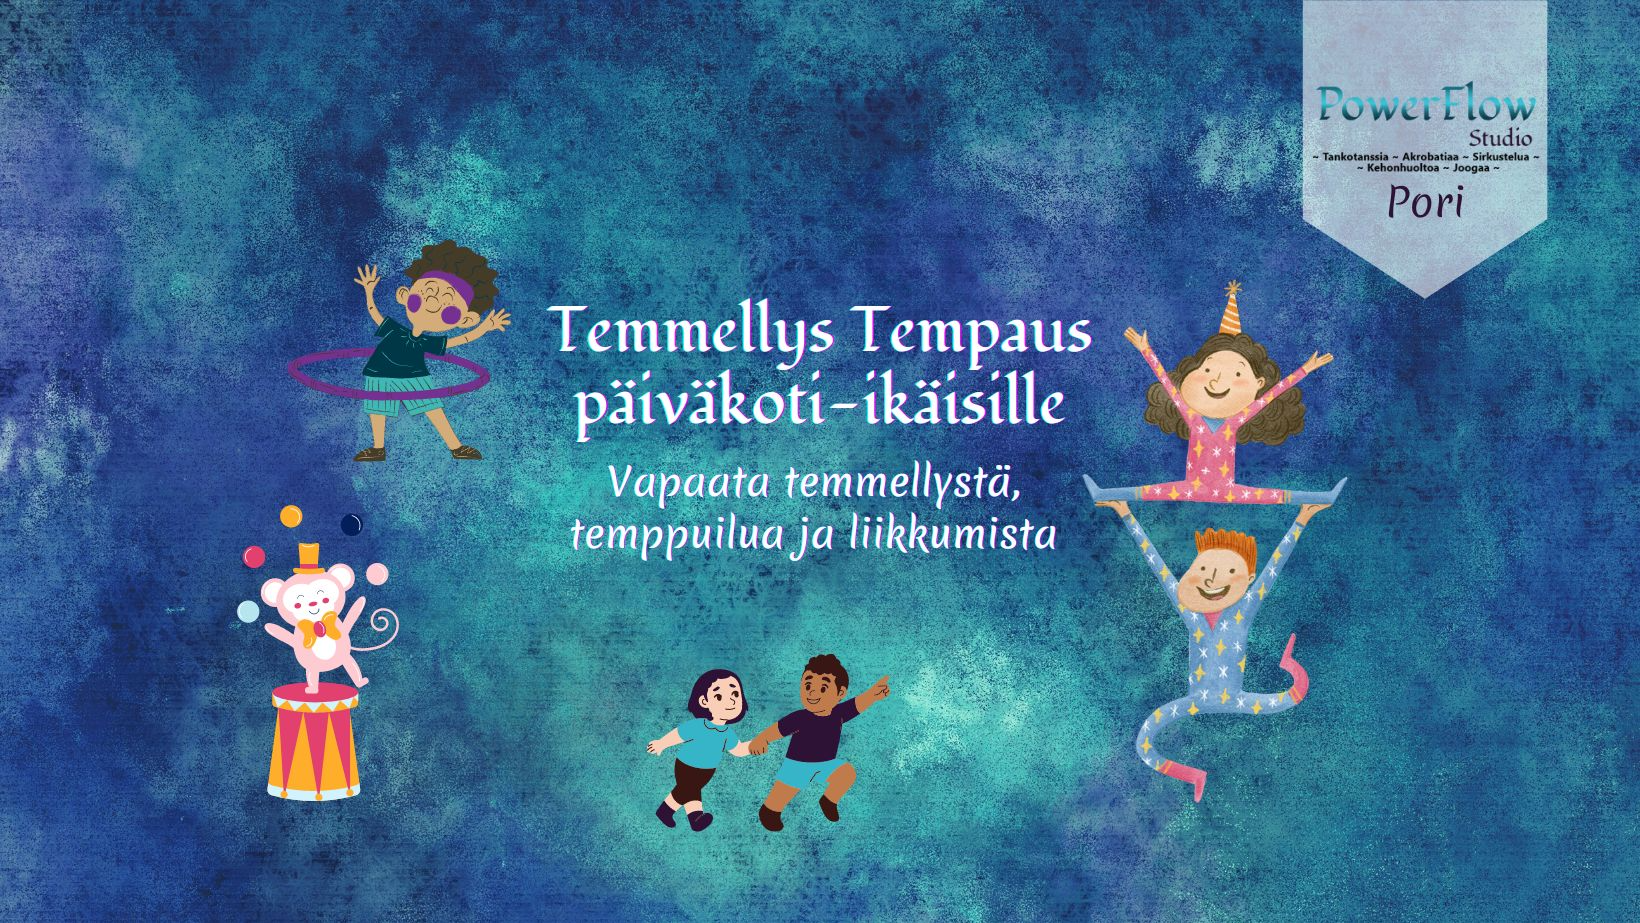 Temmellys Tempaus päiväkoti-ikäisille to 15.6. klo 16.30-17.45 / Pori